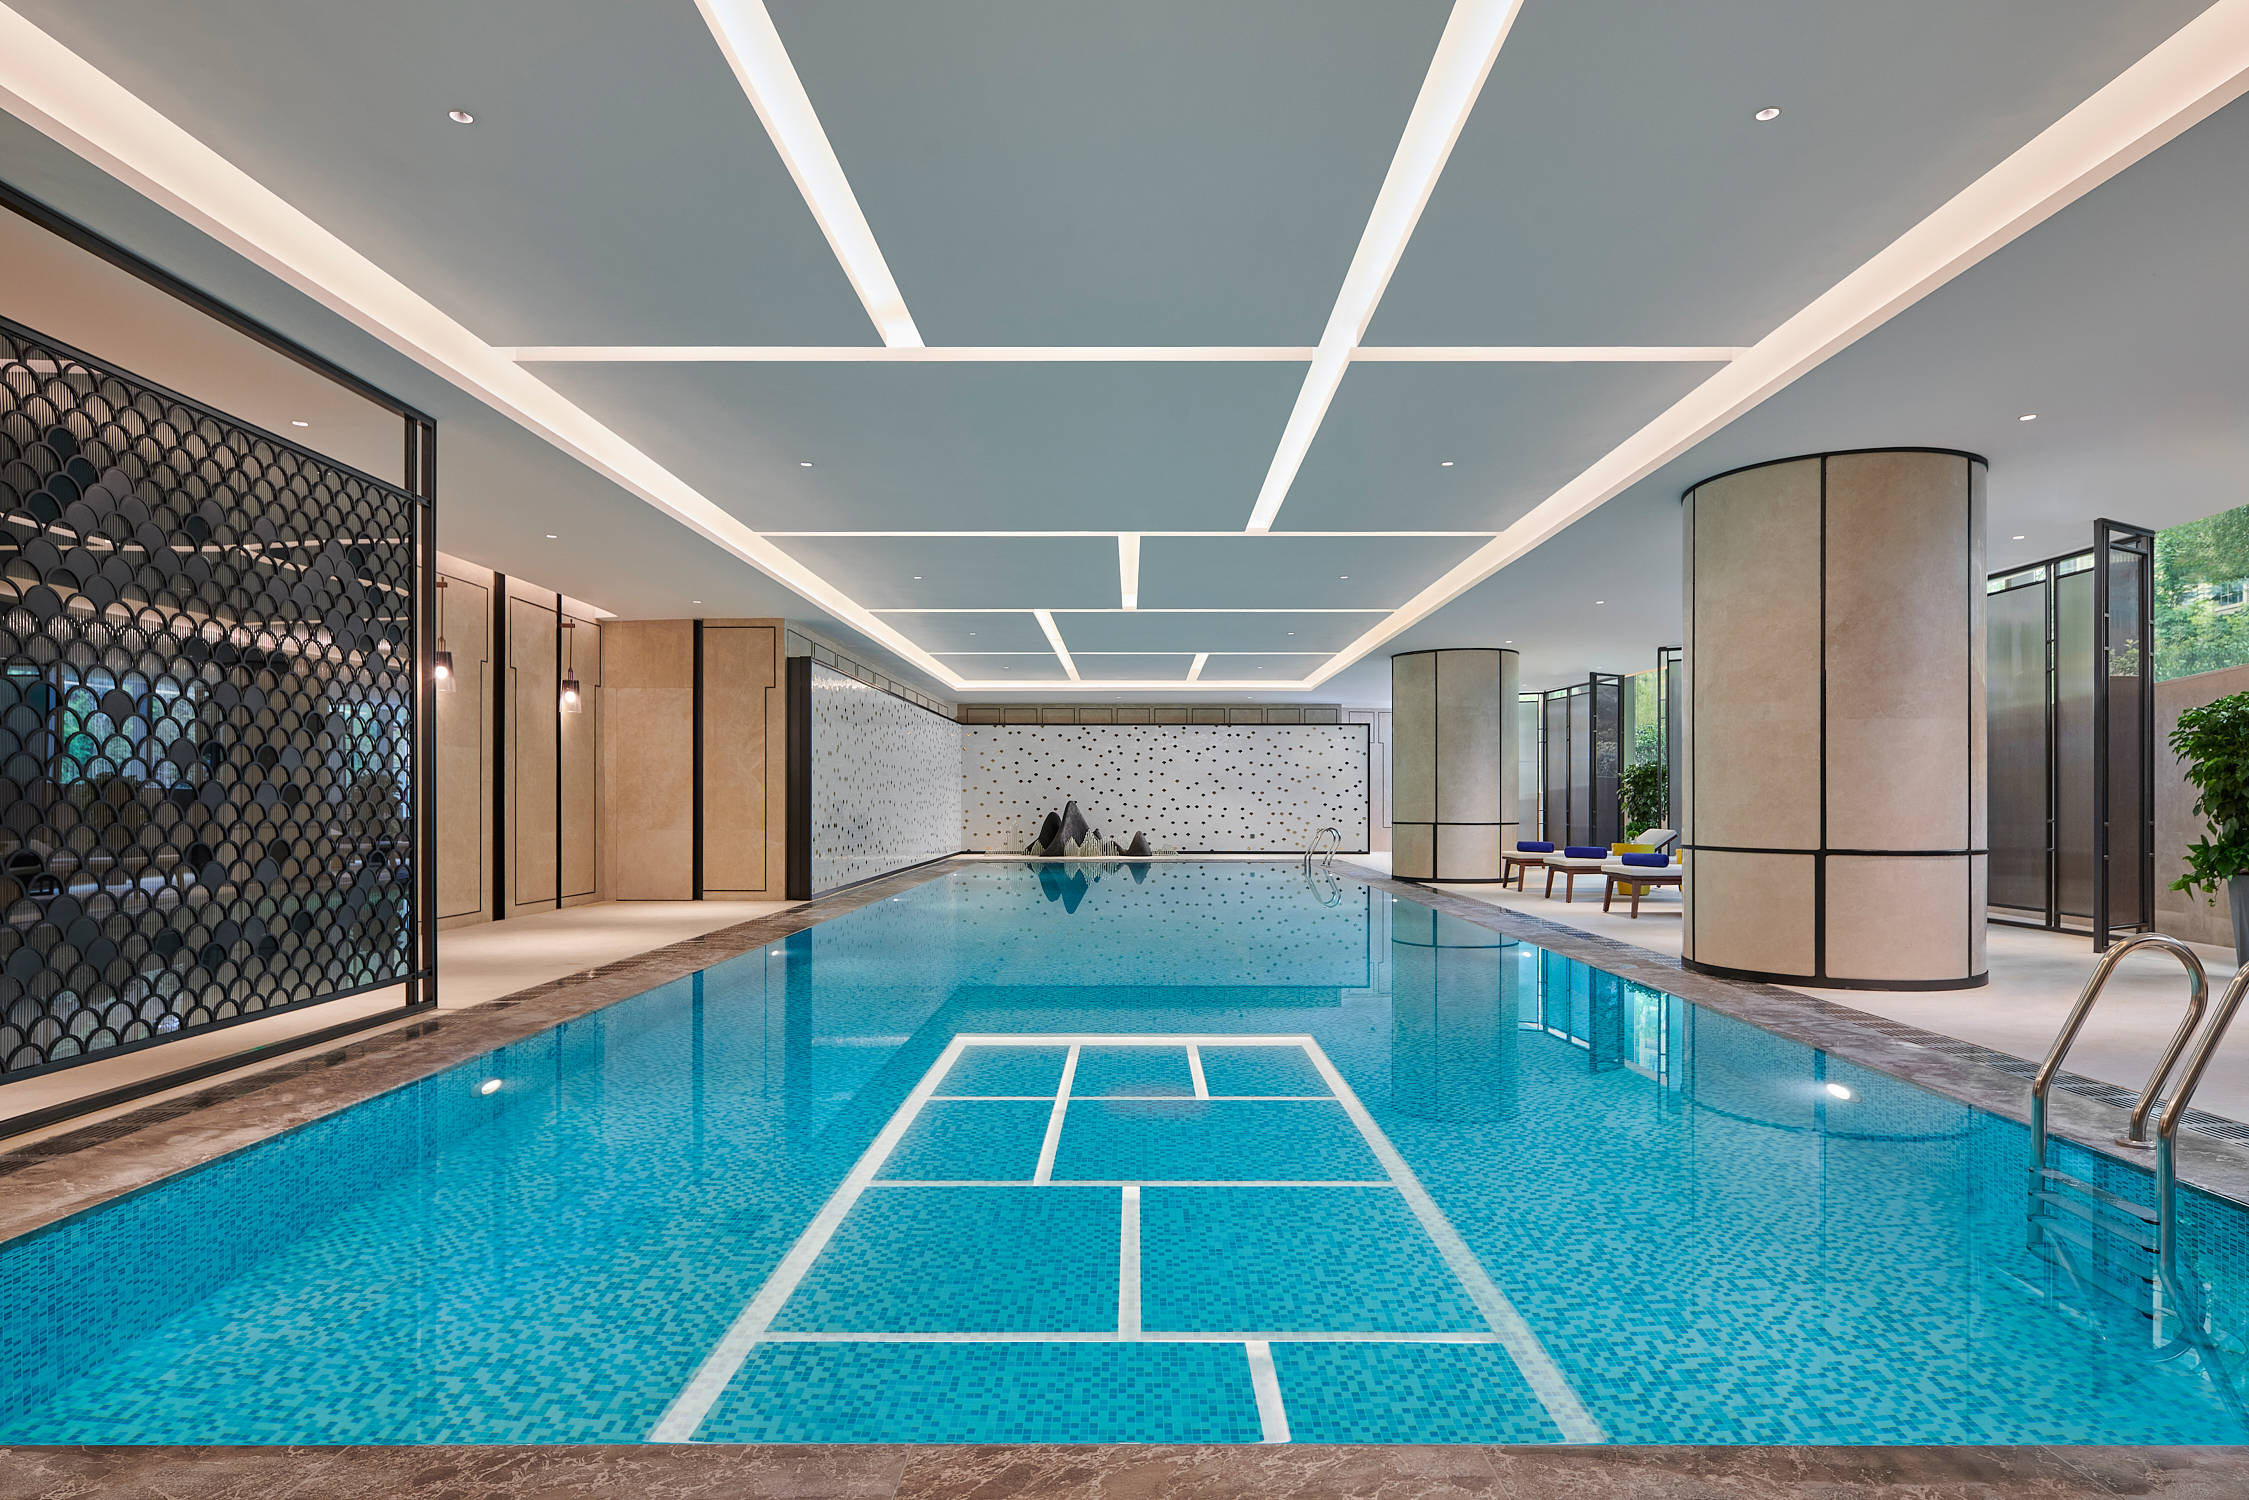 钢结构可拆装式泳池 组装整体式泳池 别墅酒店学校工程